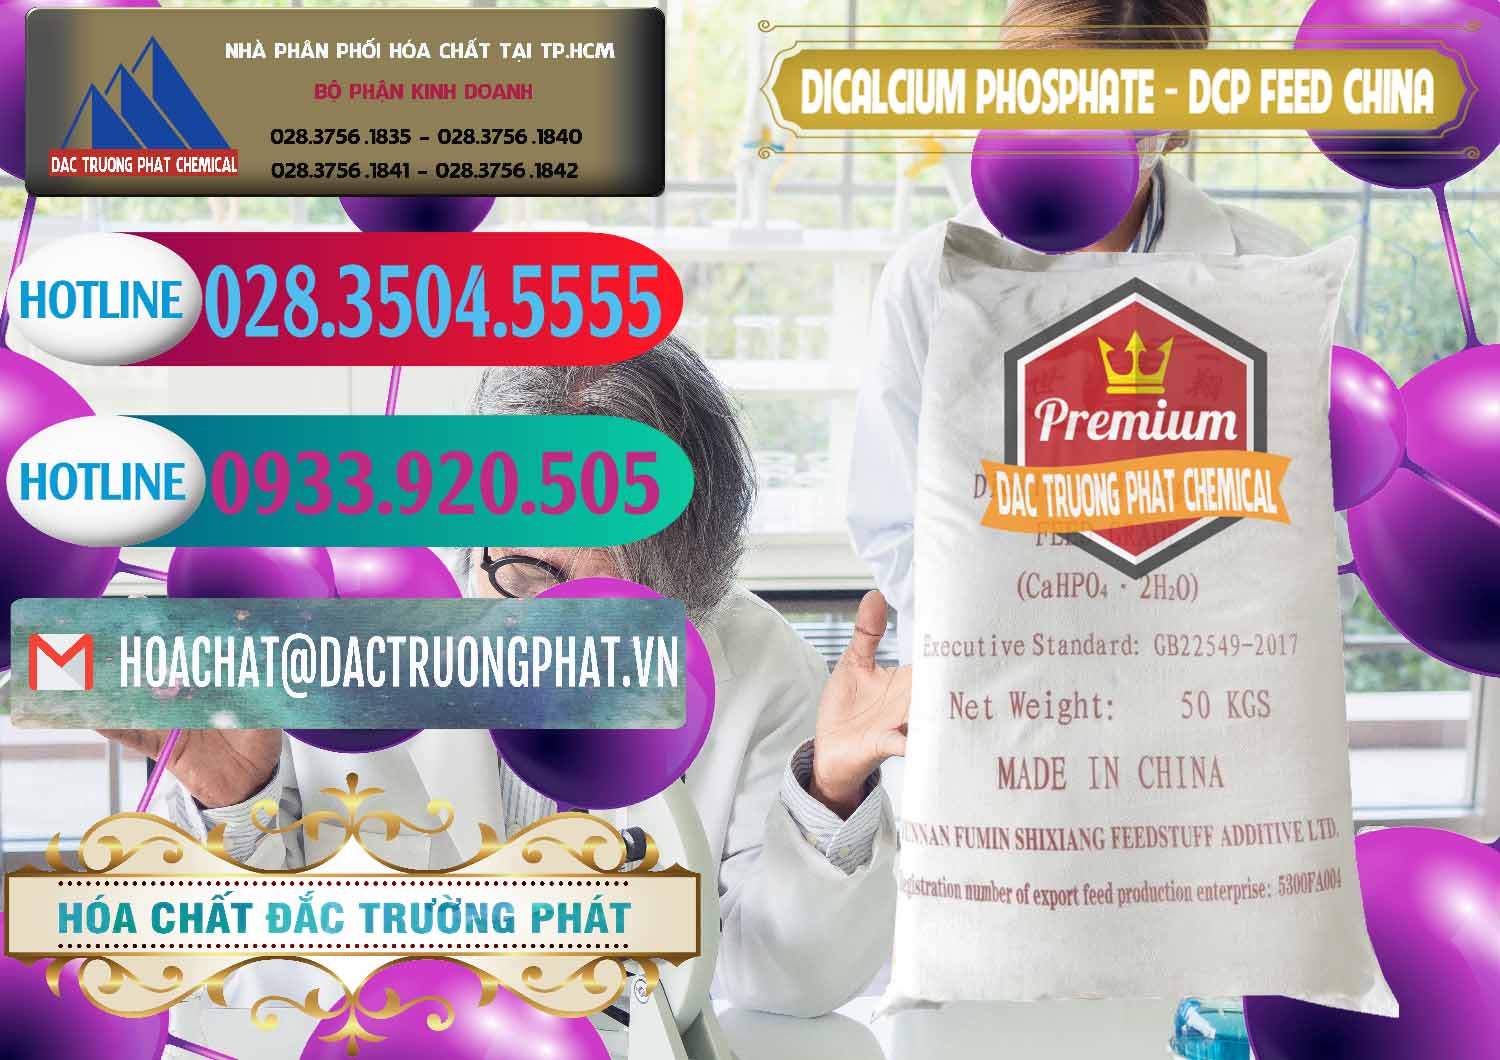 Đơn vị chuyên kinh doanh ( bán ) Dicalcium Phosphate - DCP Feed Grade Trung Quốc China - 0296 - Chuyên cung cấp & bán hóa chất tại TP.HCM - truongphat.vn